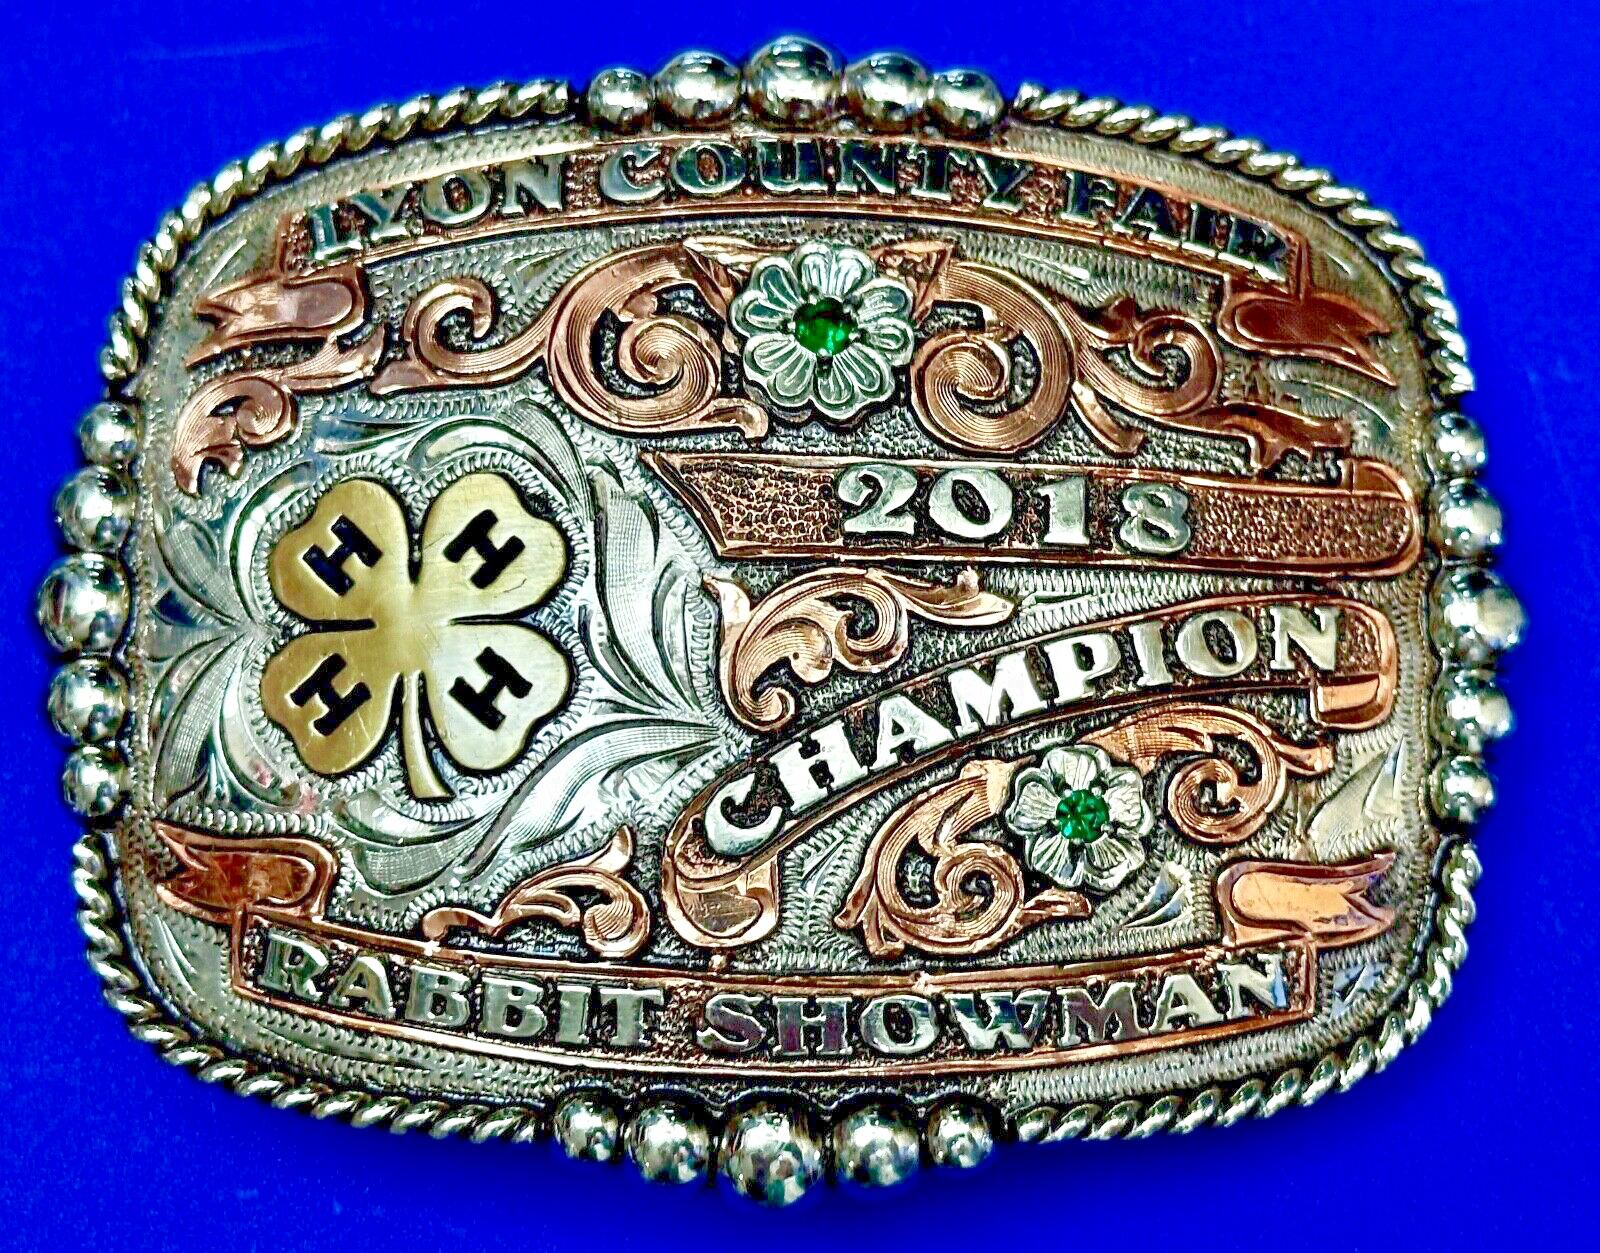 Lyon County 4H Fair 2018 Champion Rabbit Showman Trophy Belt Buckle